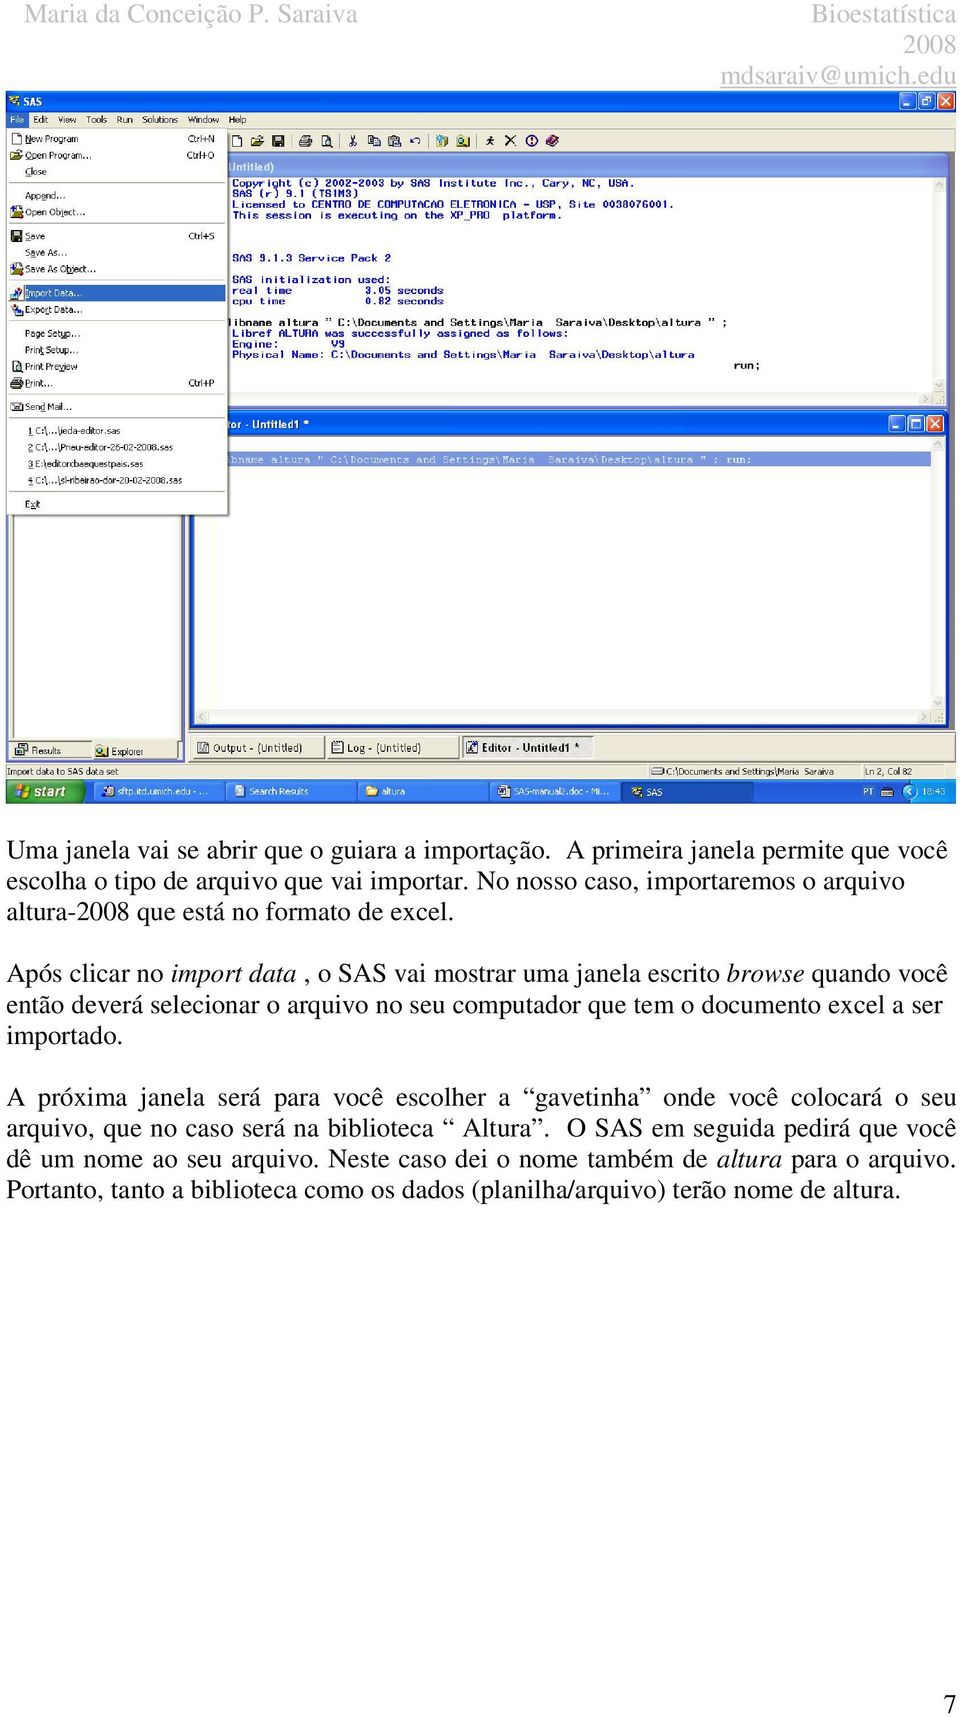 Após clicar no import data, o SAS vai mostrar uma janela escrito browse quando você então deverá selecionar o arquivo no seu computador que tem o documento excel a ser importado.